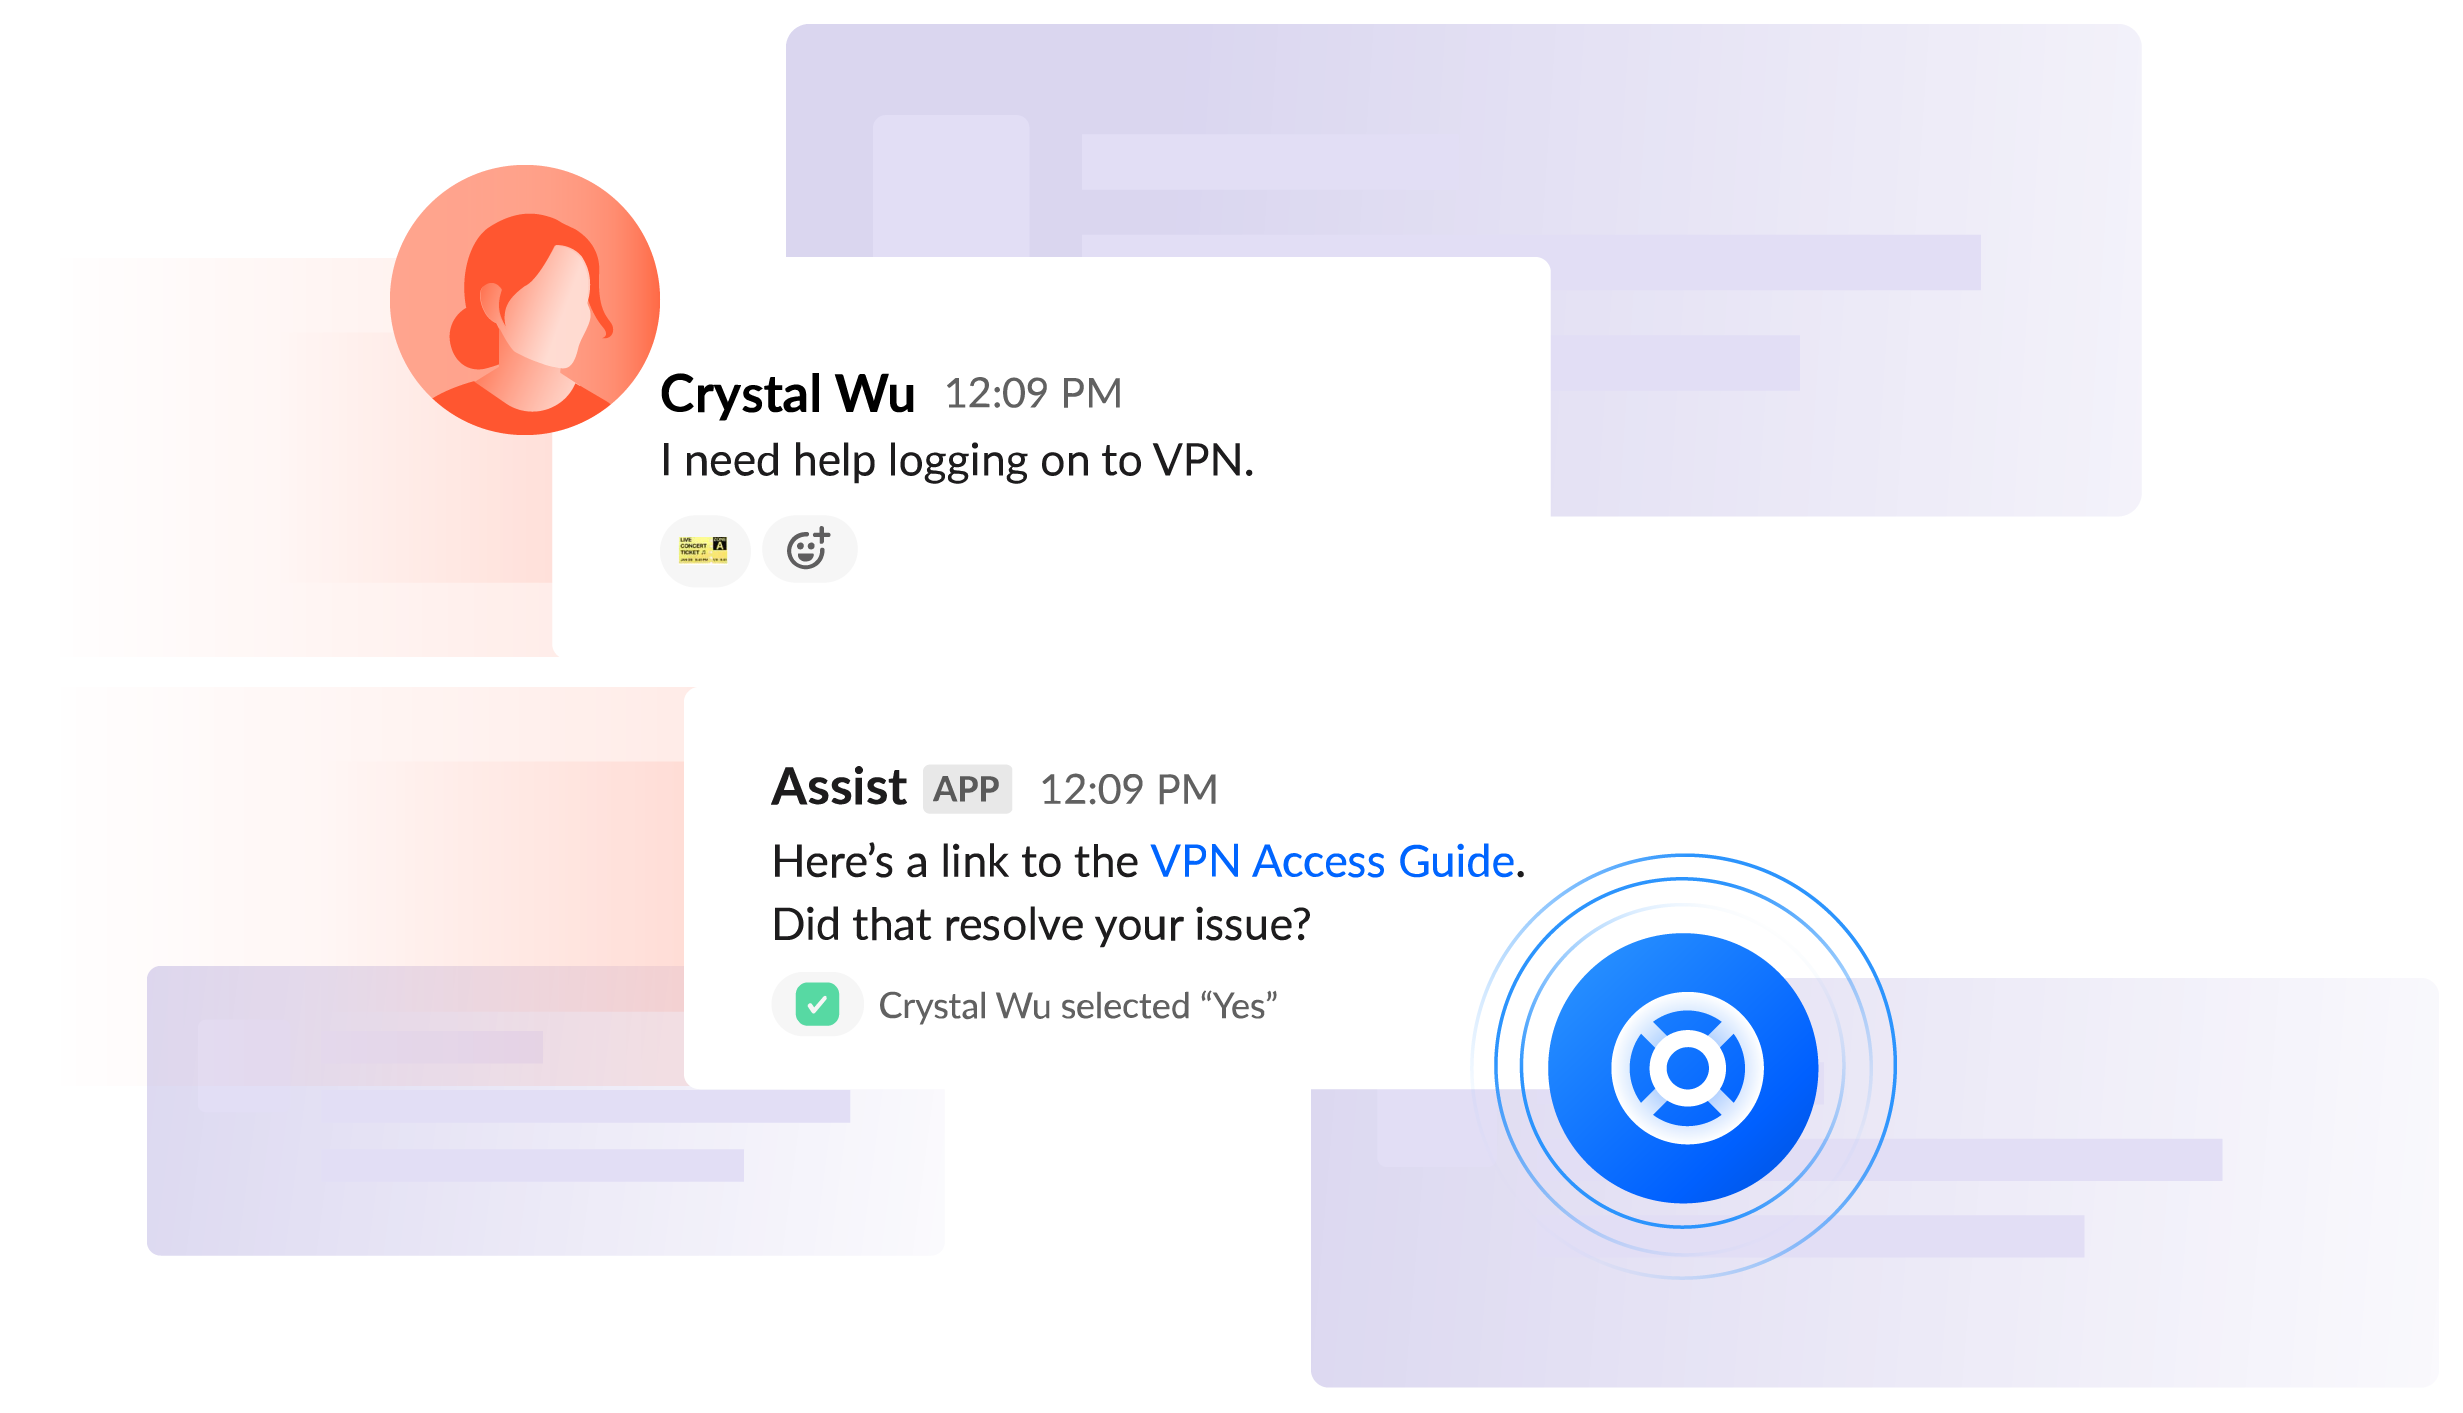 Conversa pelo Slack "Preciso de ajuda para fazer login na VPN"- Crystal; "Aqui está o link para o guia de acesso à VPN. Isso resolveu o item?" - Assist